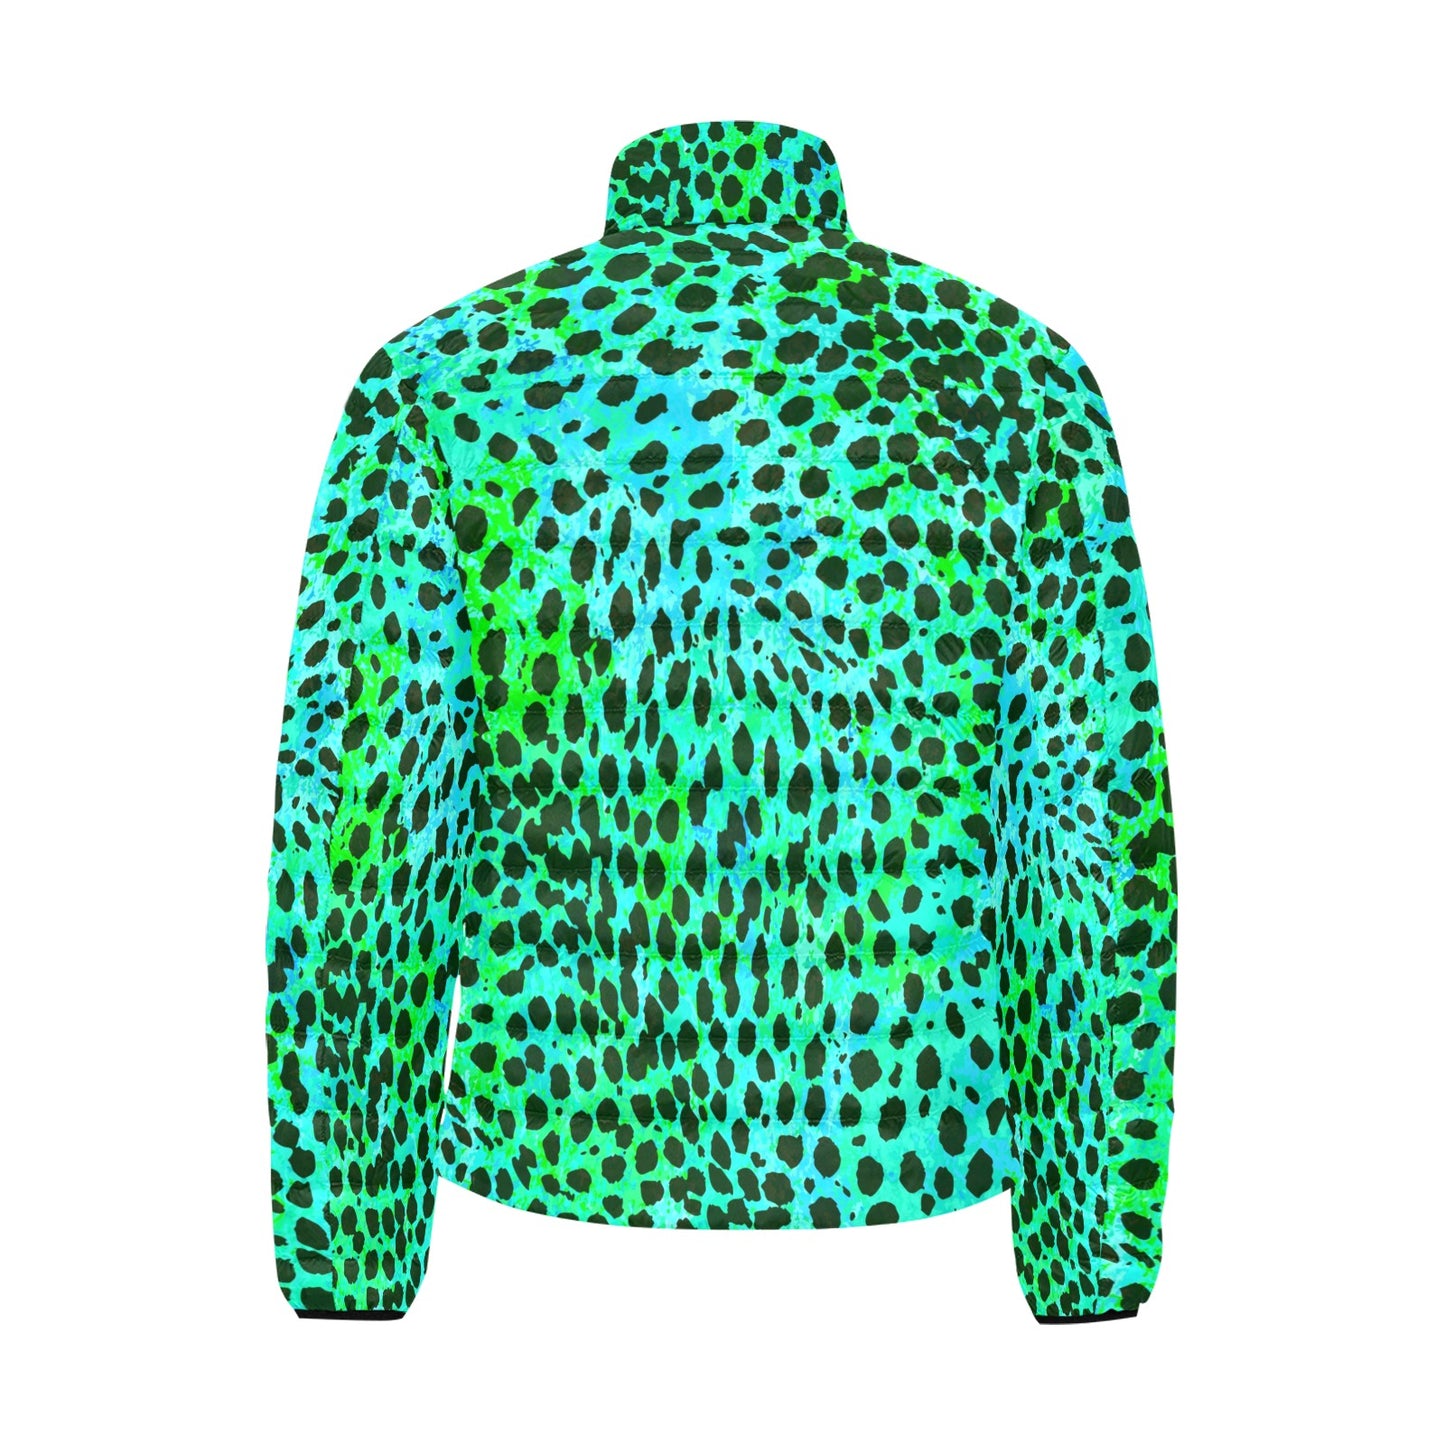 Neon Green Leopard Print Lightweight Puffer Jacket